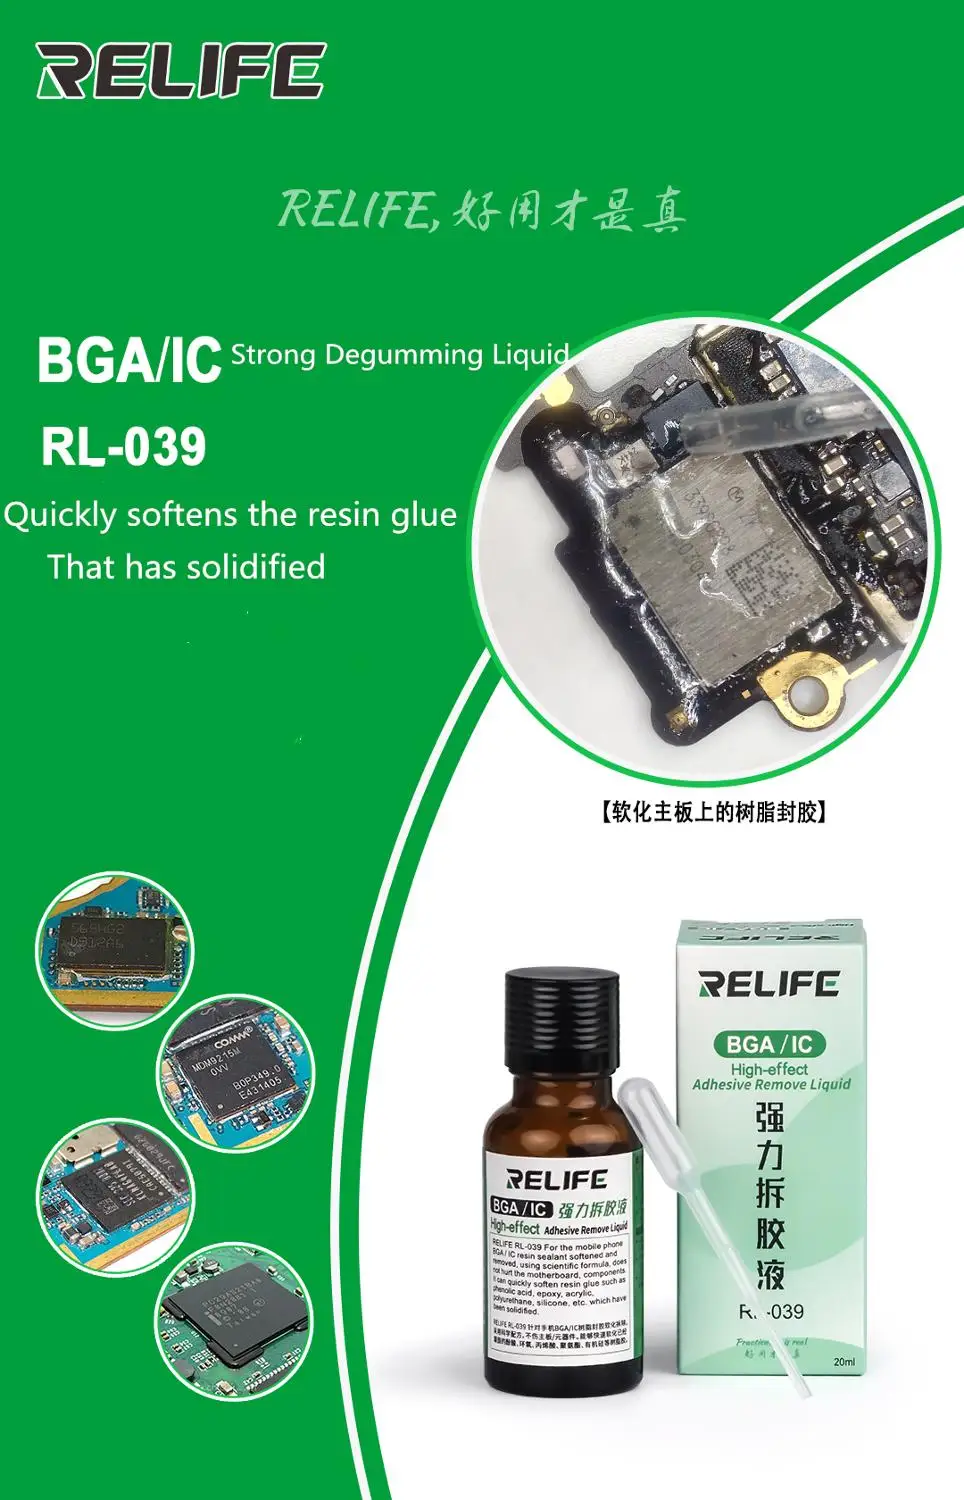 RELIFE RL-039 удалить клей жидкость смягчить удалить смолы клей PCB BGA IC чип твердый клей дегенерации материнская плата ремонт инструменты